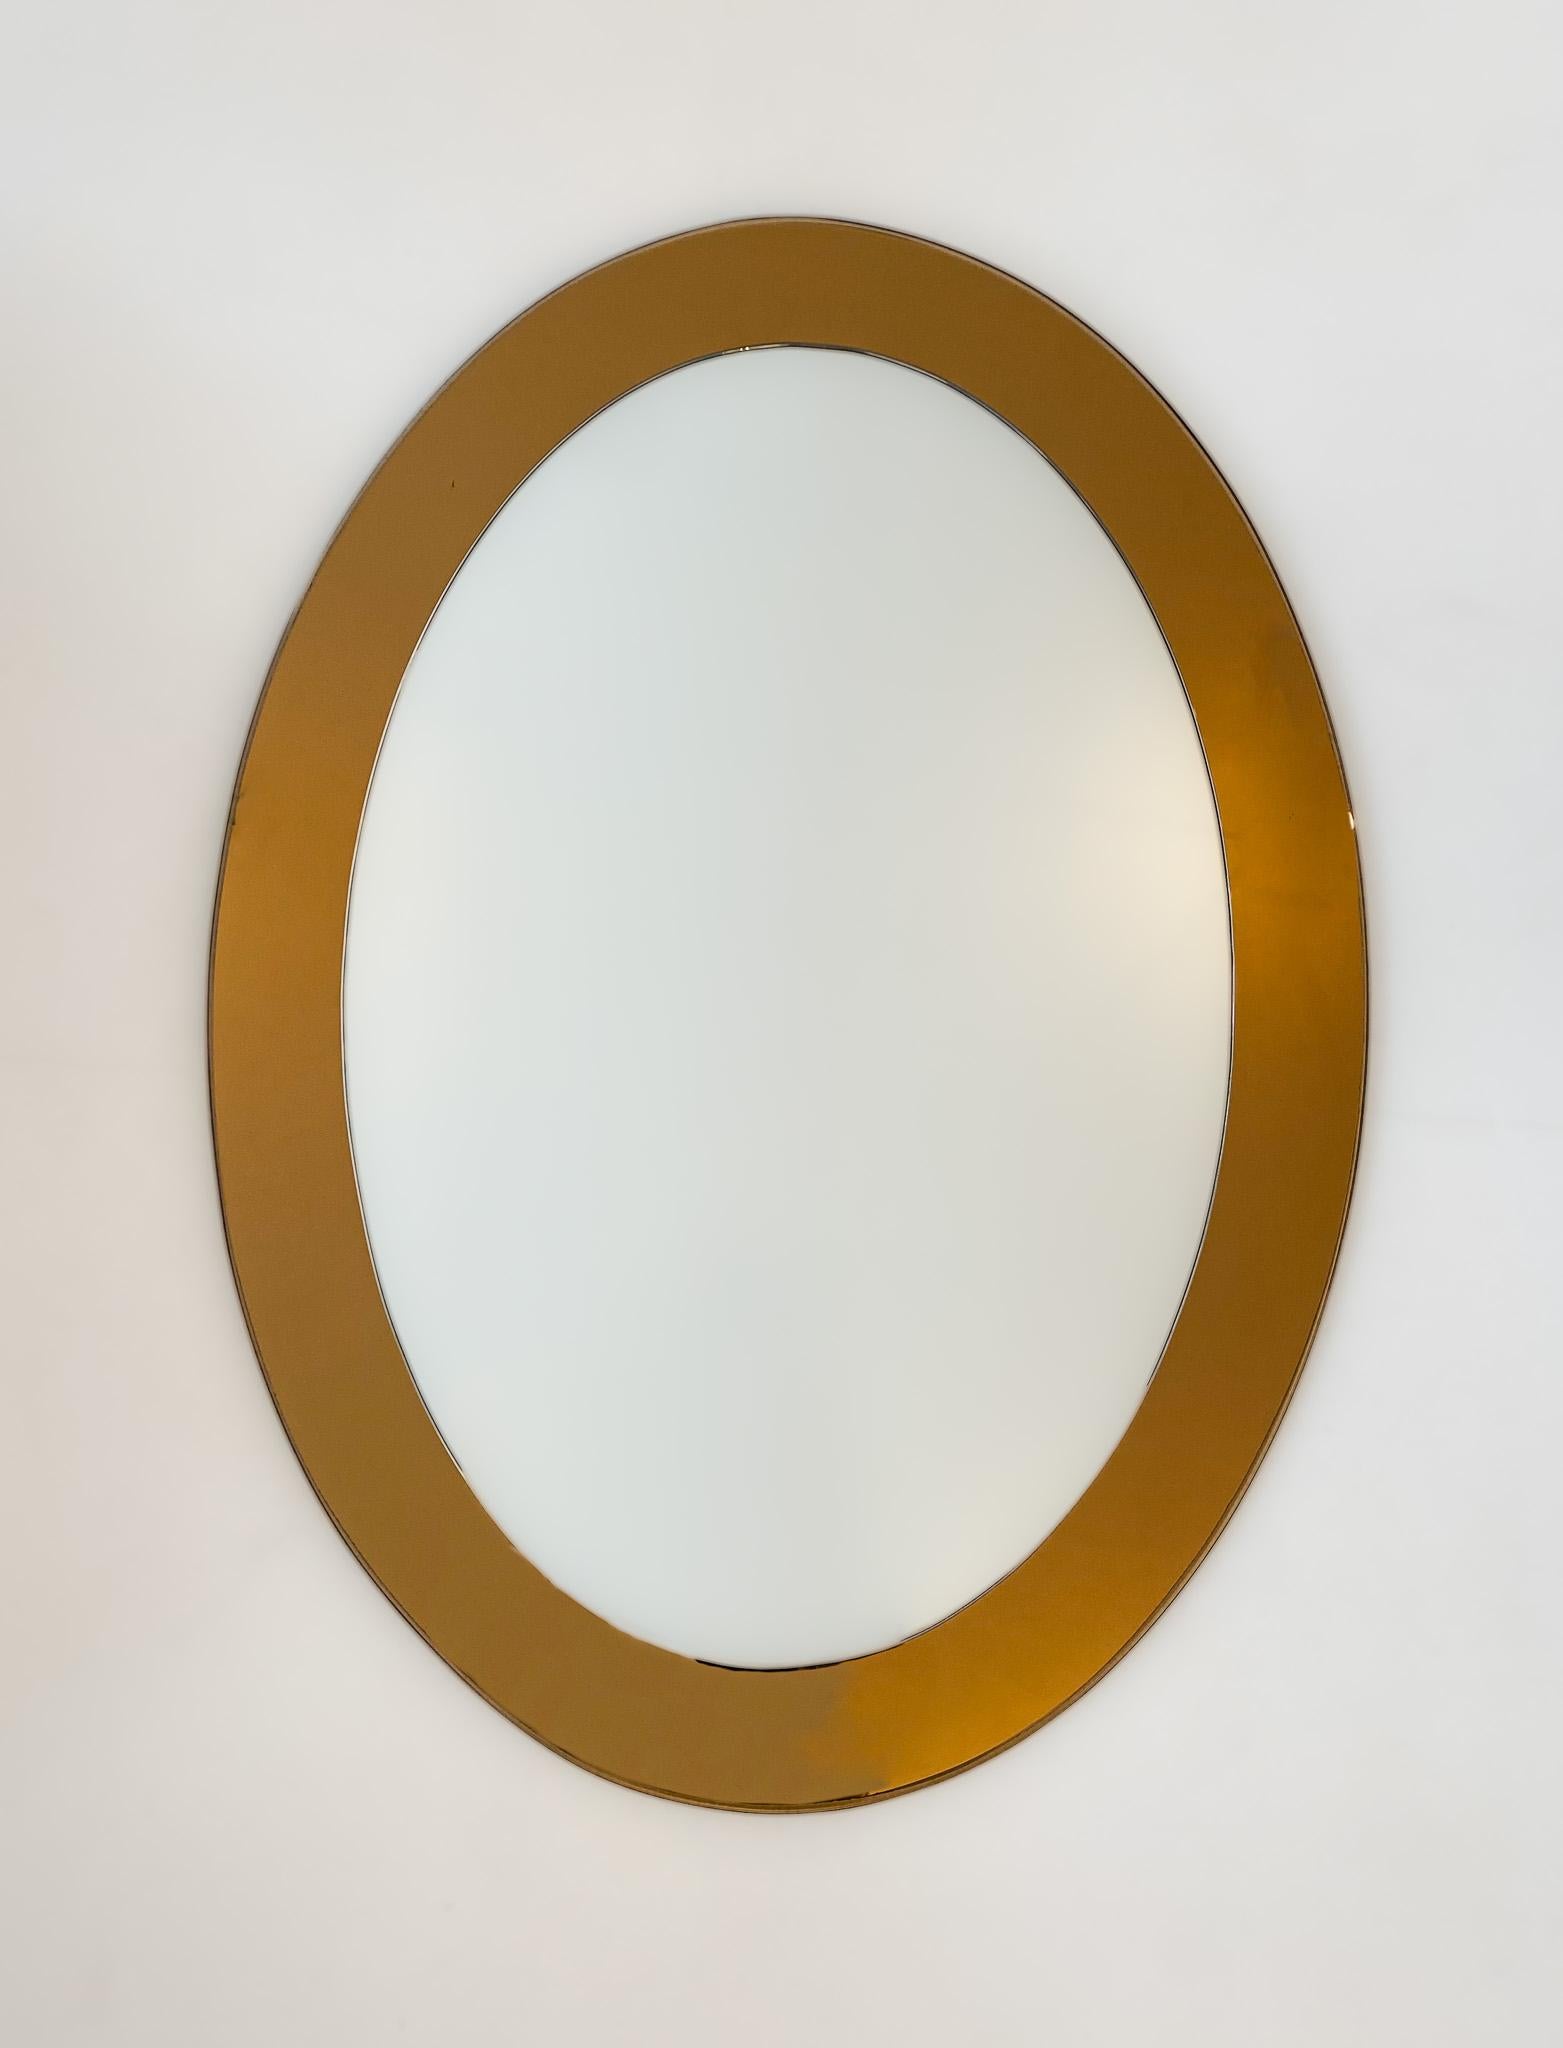 Miroir mural ovale en verre brun, Italie 1970.

Très élégant miroir mural italien de forme ovale des années 70. Ce miroir mural convainc par son cadre en verre cristal réfléchissant brun et sa forme ovale. Le verre du miroir est très épais et en